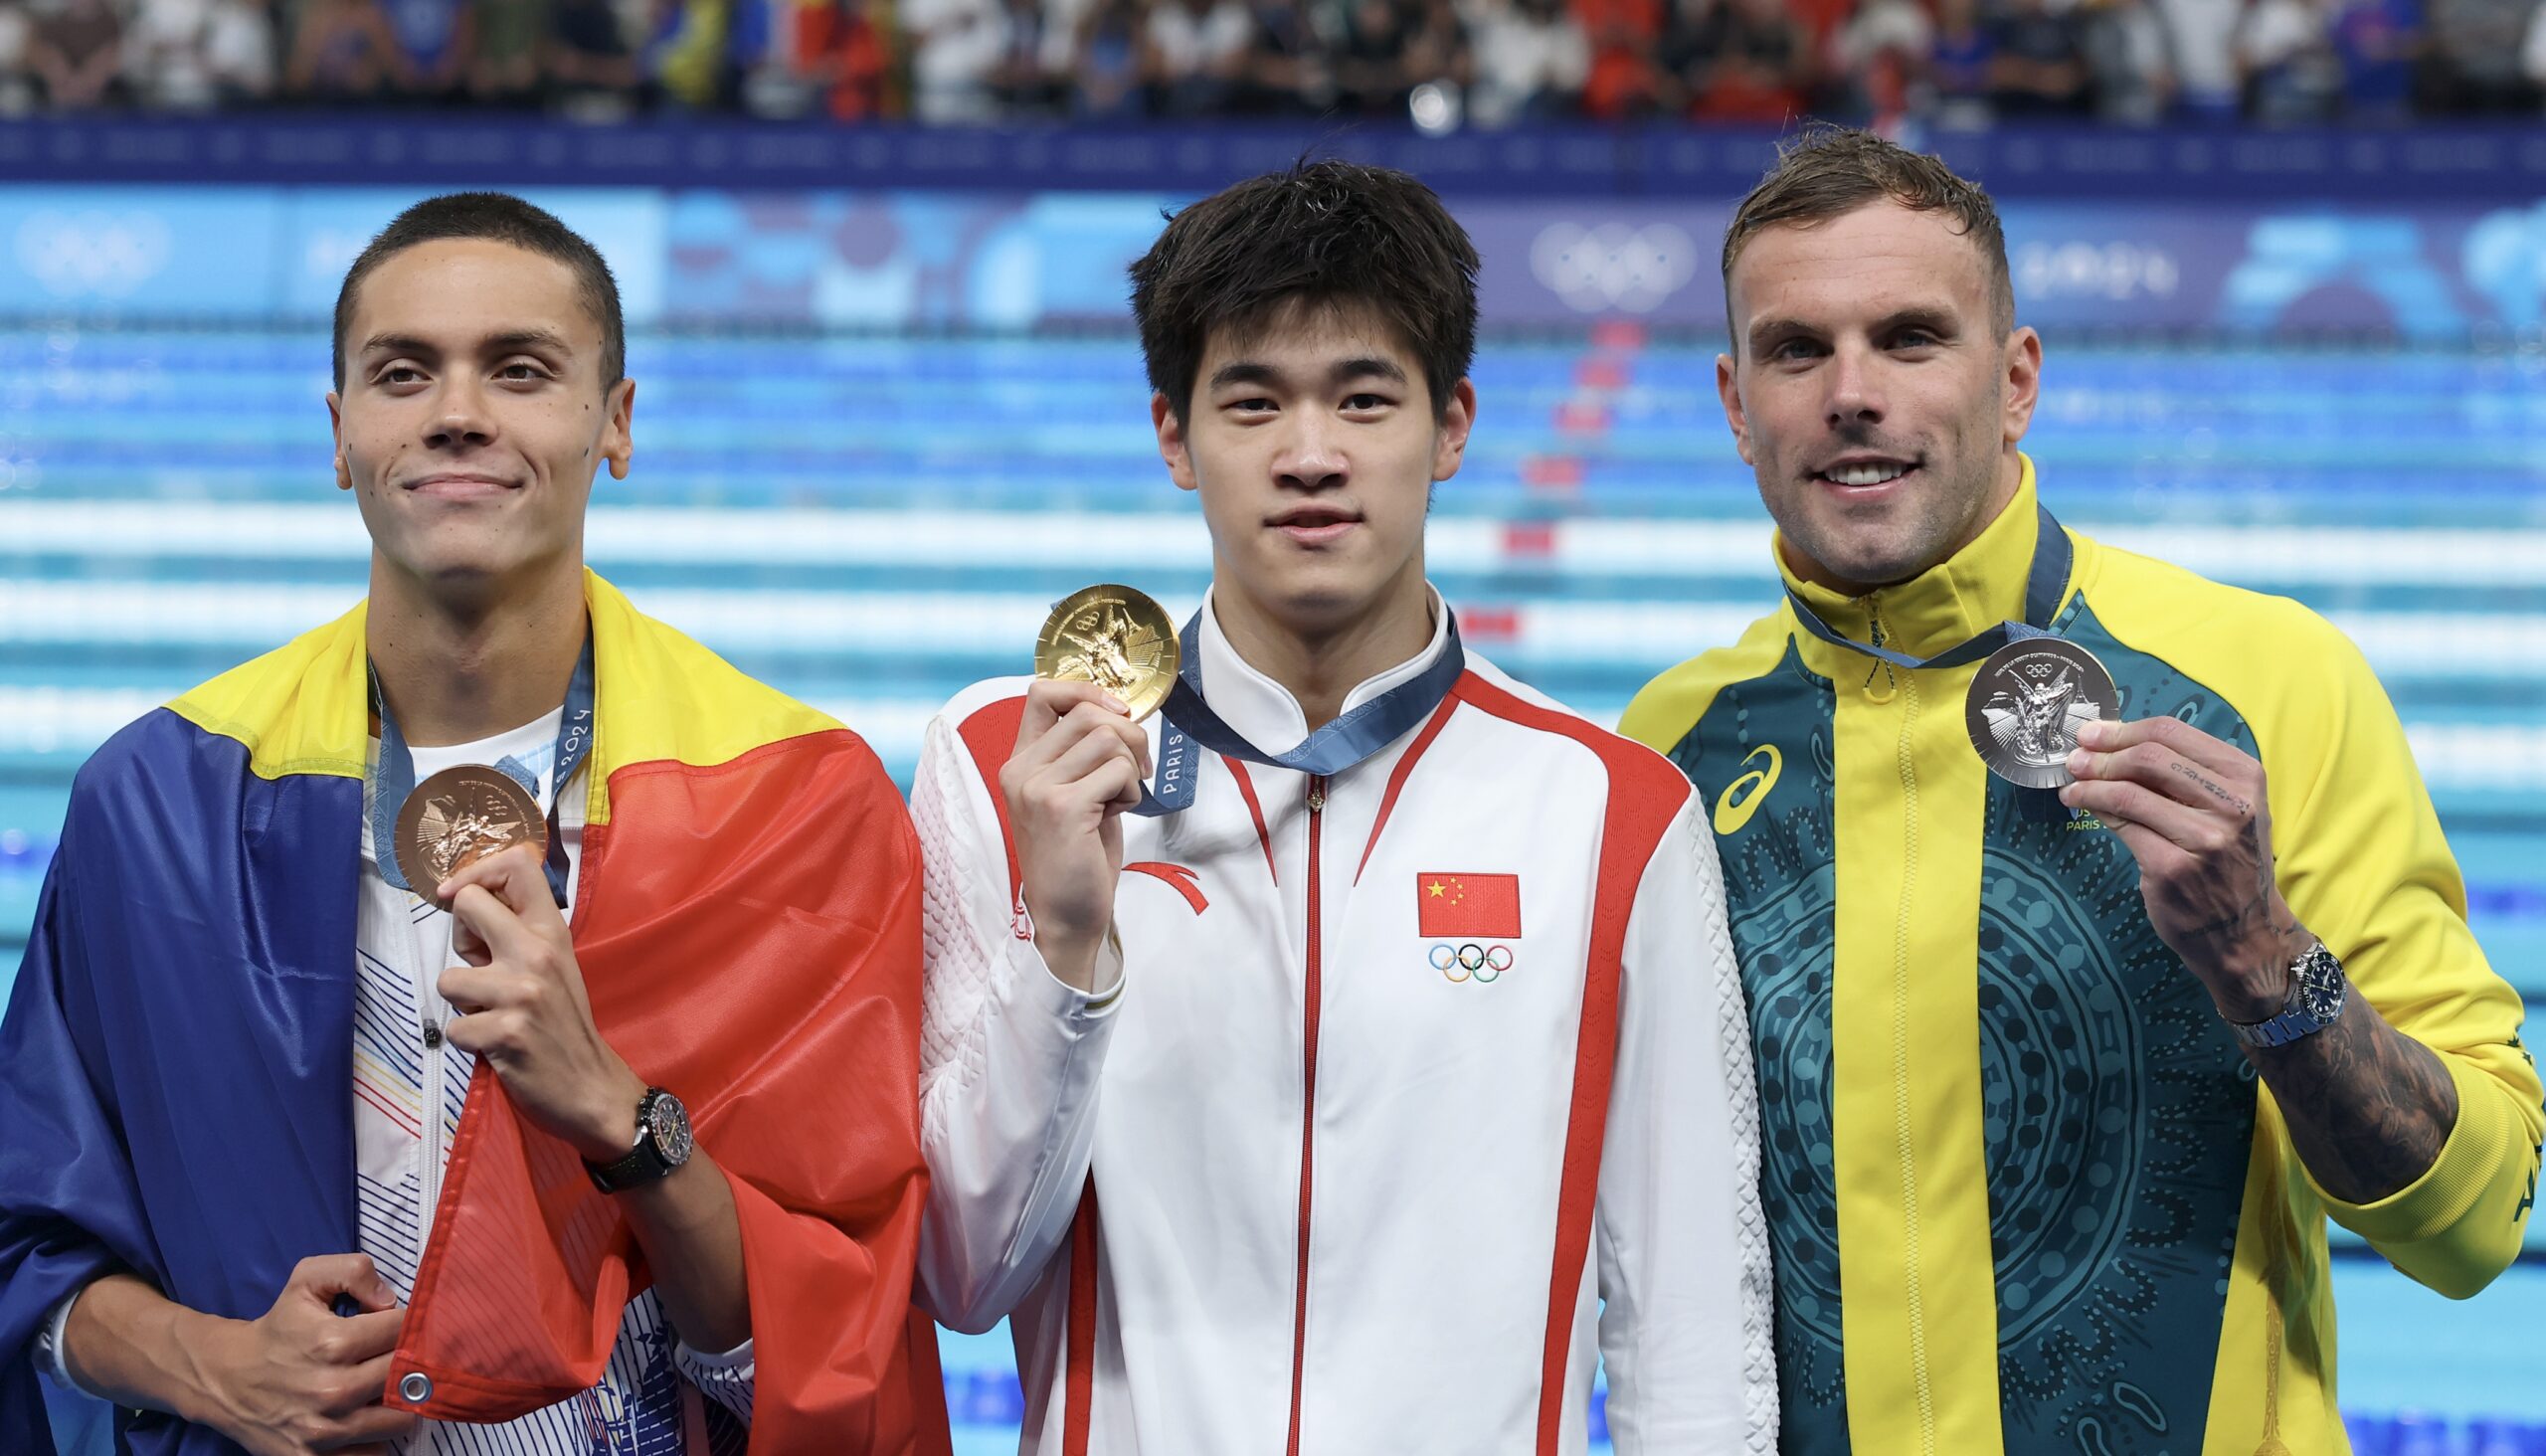 David Popovici, reacţie genială după ce Pan Zhanle a spulberat recordul mondial la 100 m liber, la Jocurile Olimpice